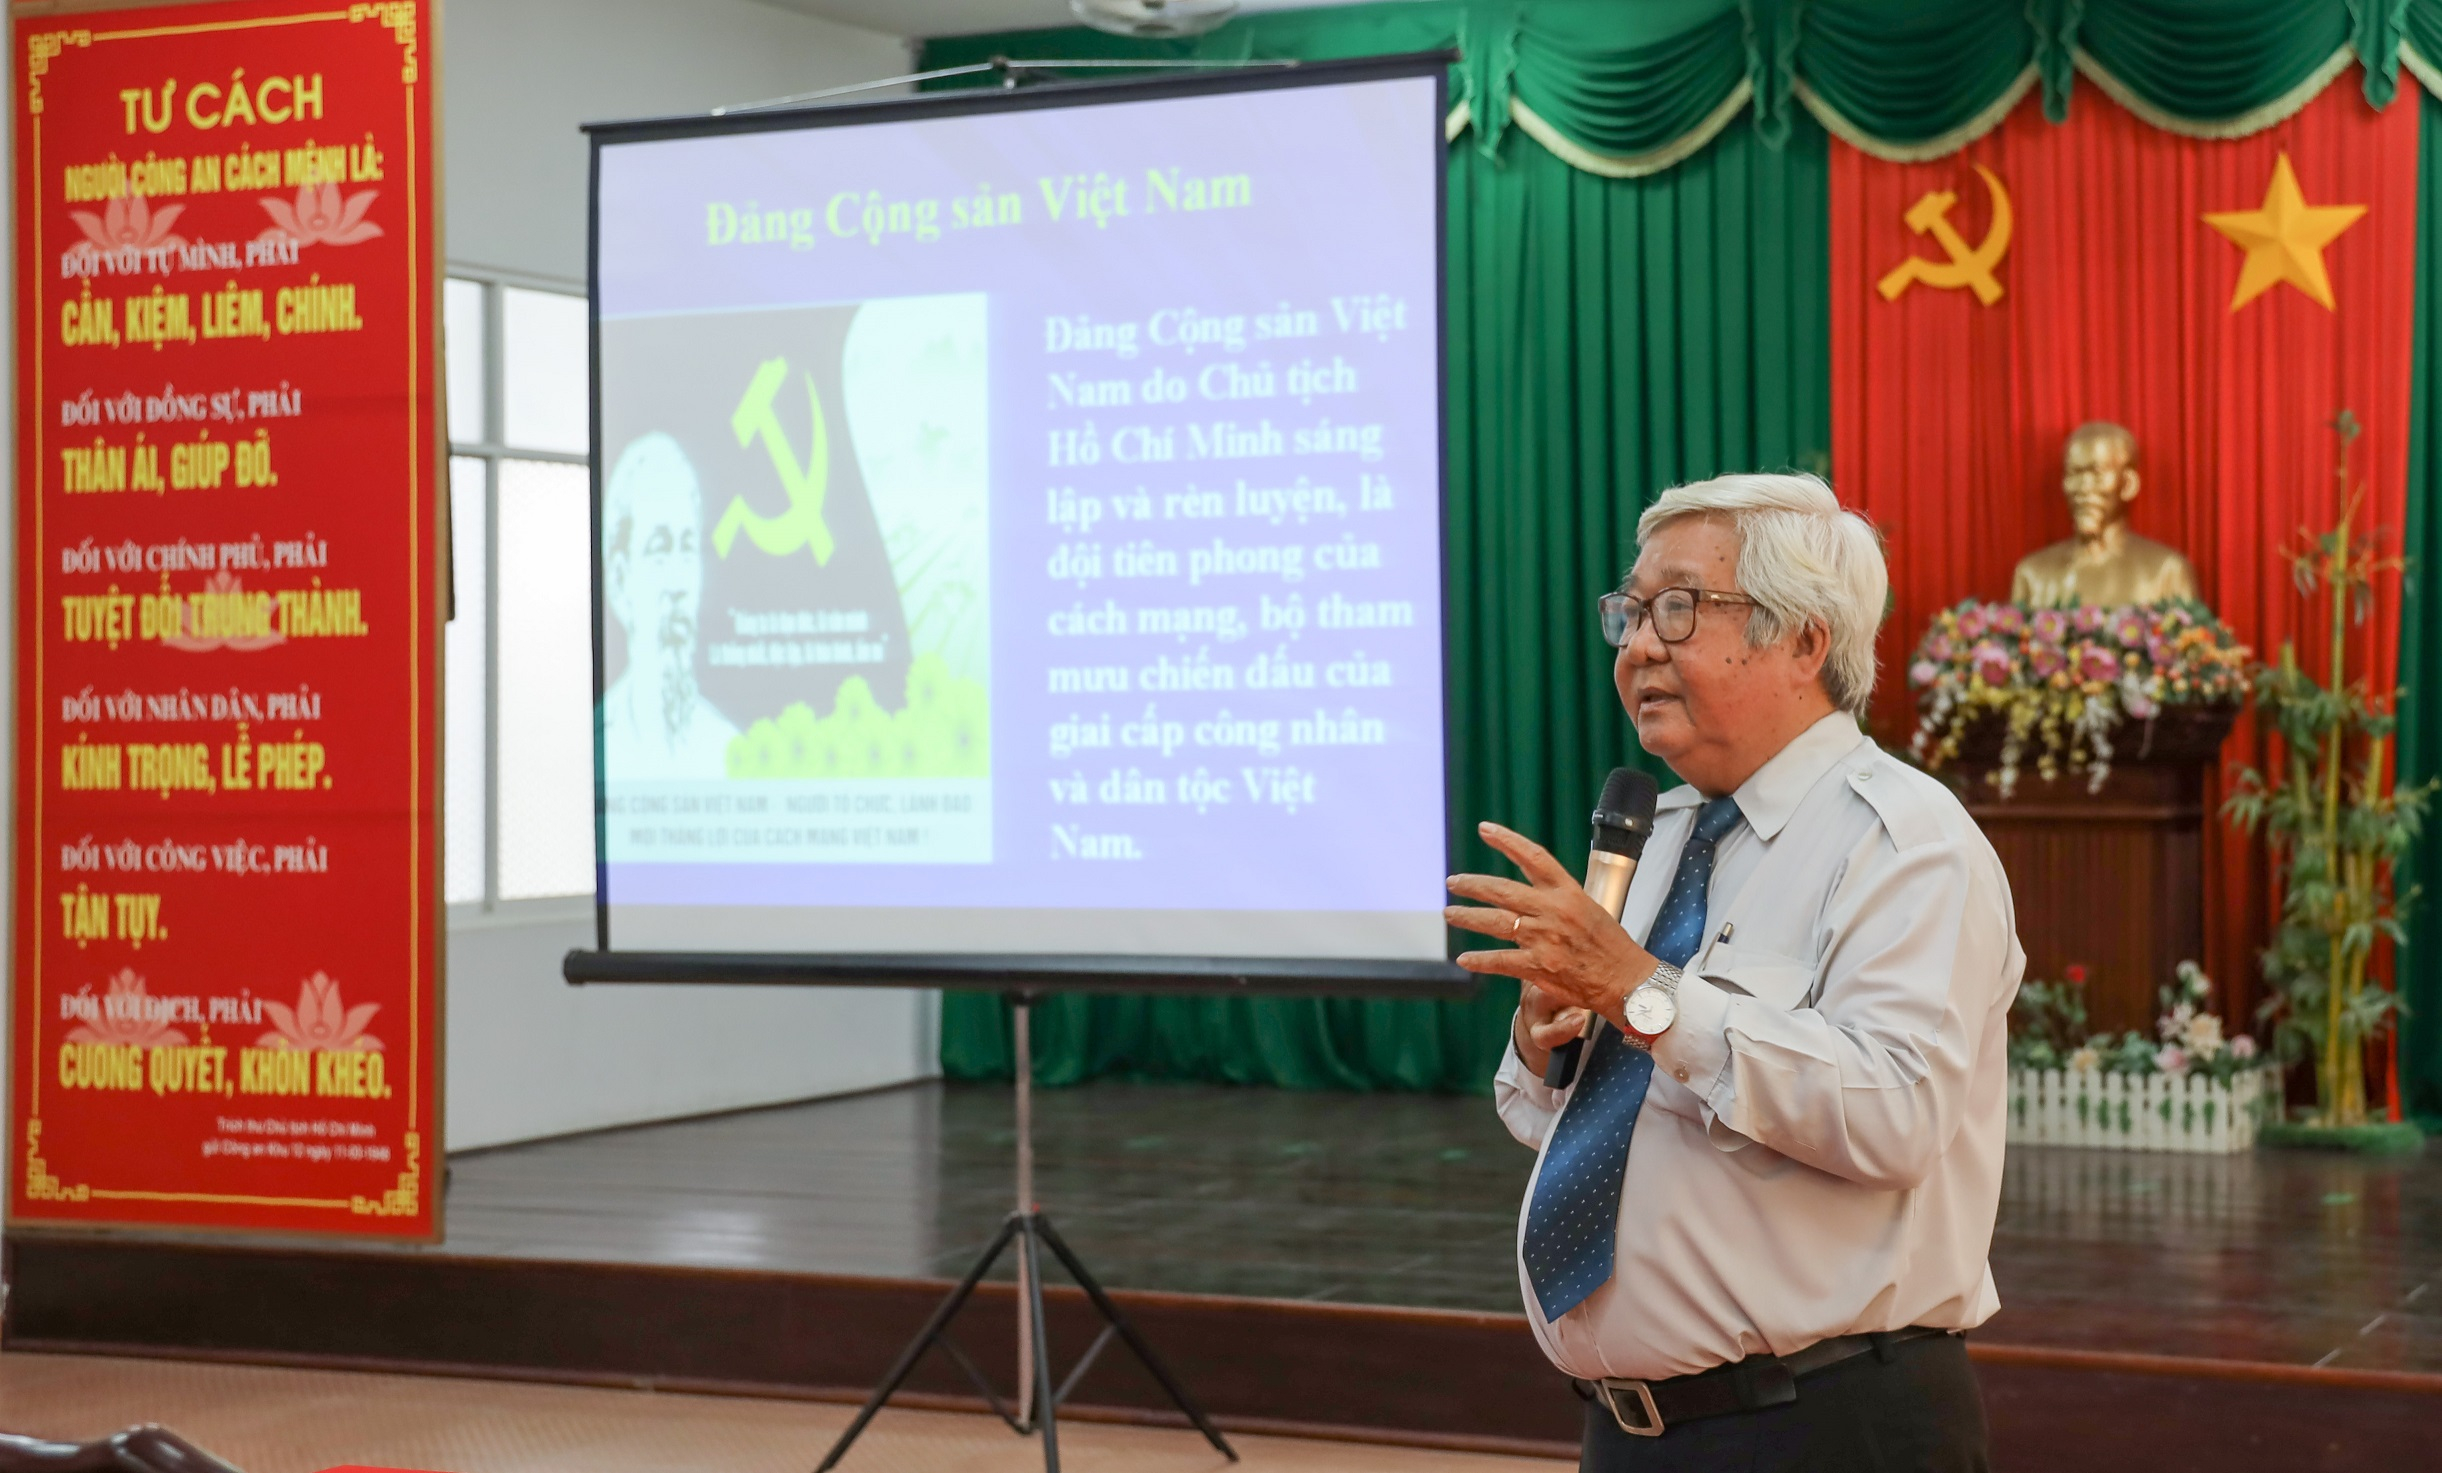 Ông Trần Văn Kiệt - nguyên Phó Trưởng ban Tuyên giáo Thành ủy TP. Cần Thơ trình bày chuyên đề đầu tiên với các học viên sau lễ khai giảng.